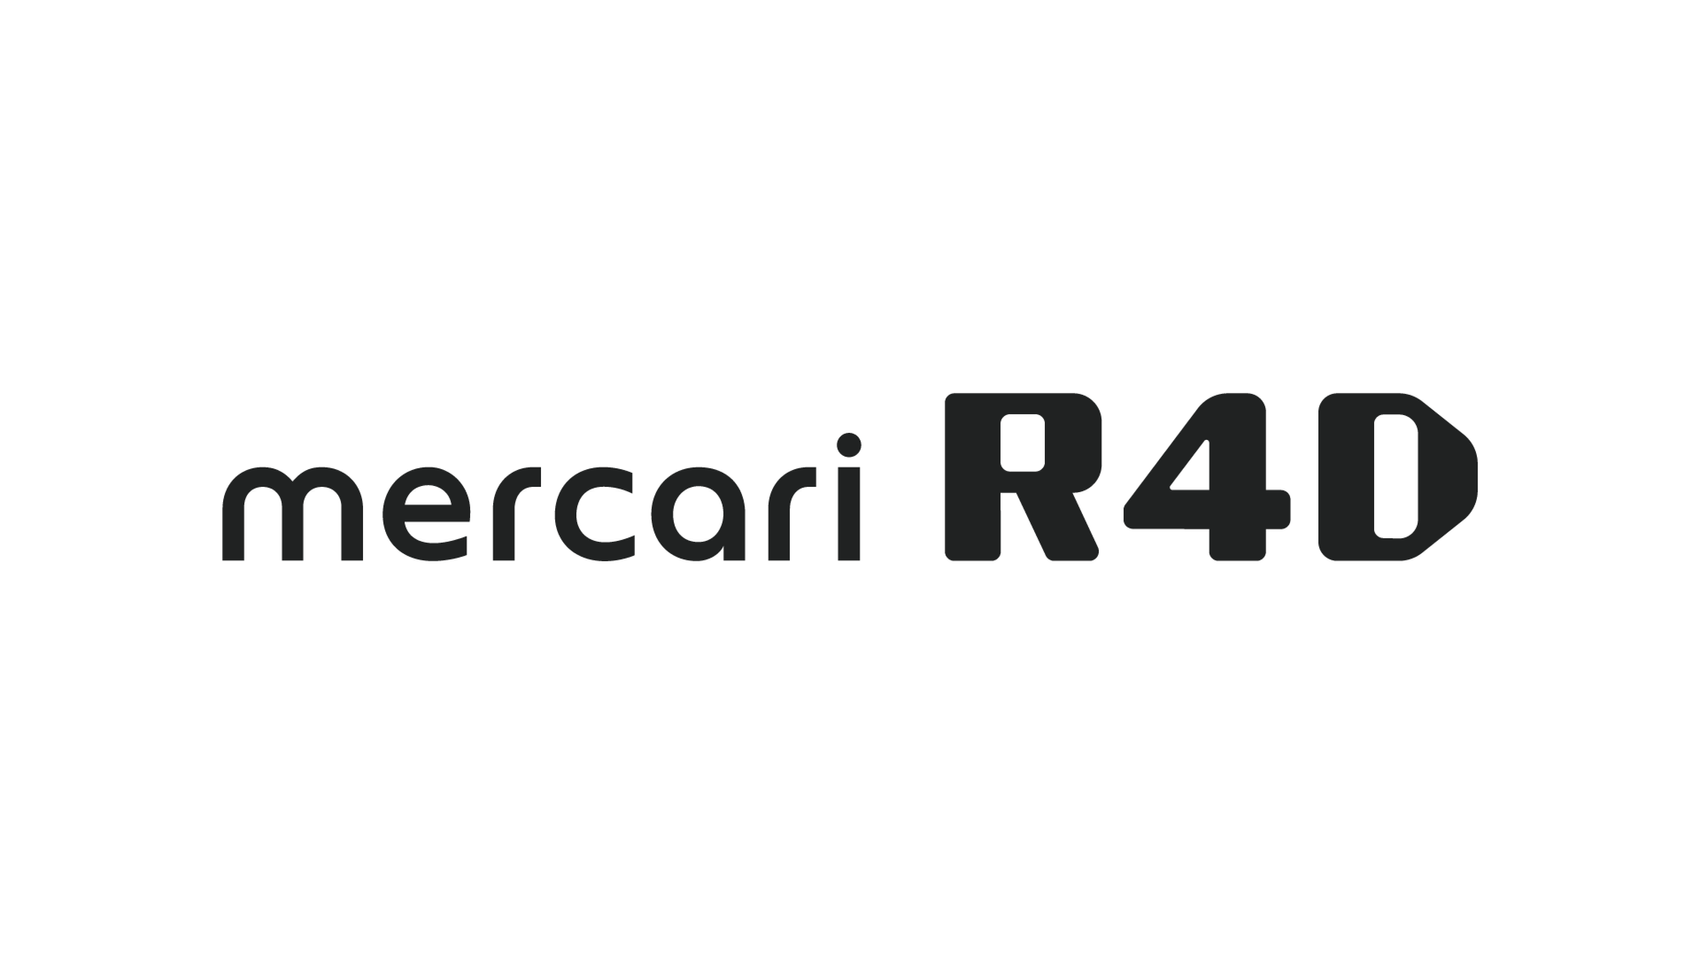 mercari R4Dは、「IPSJ-ONE2023」のプラチナスポンサーを務めます